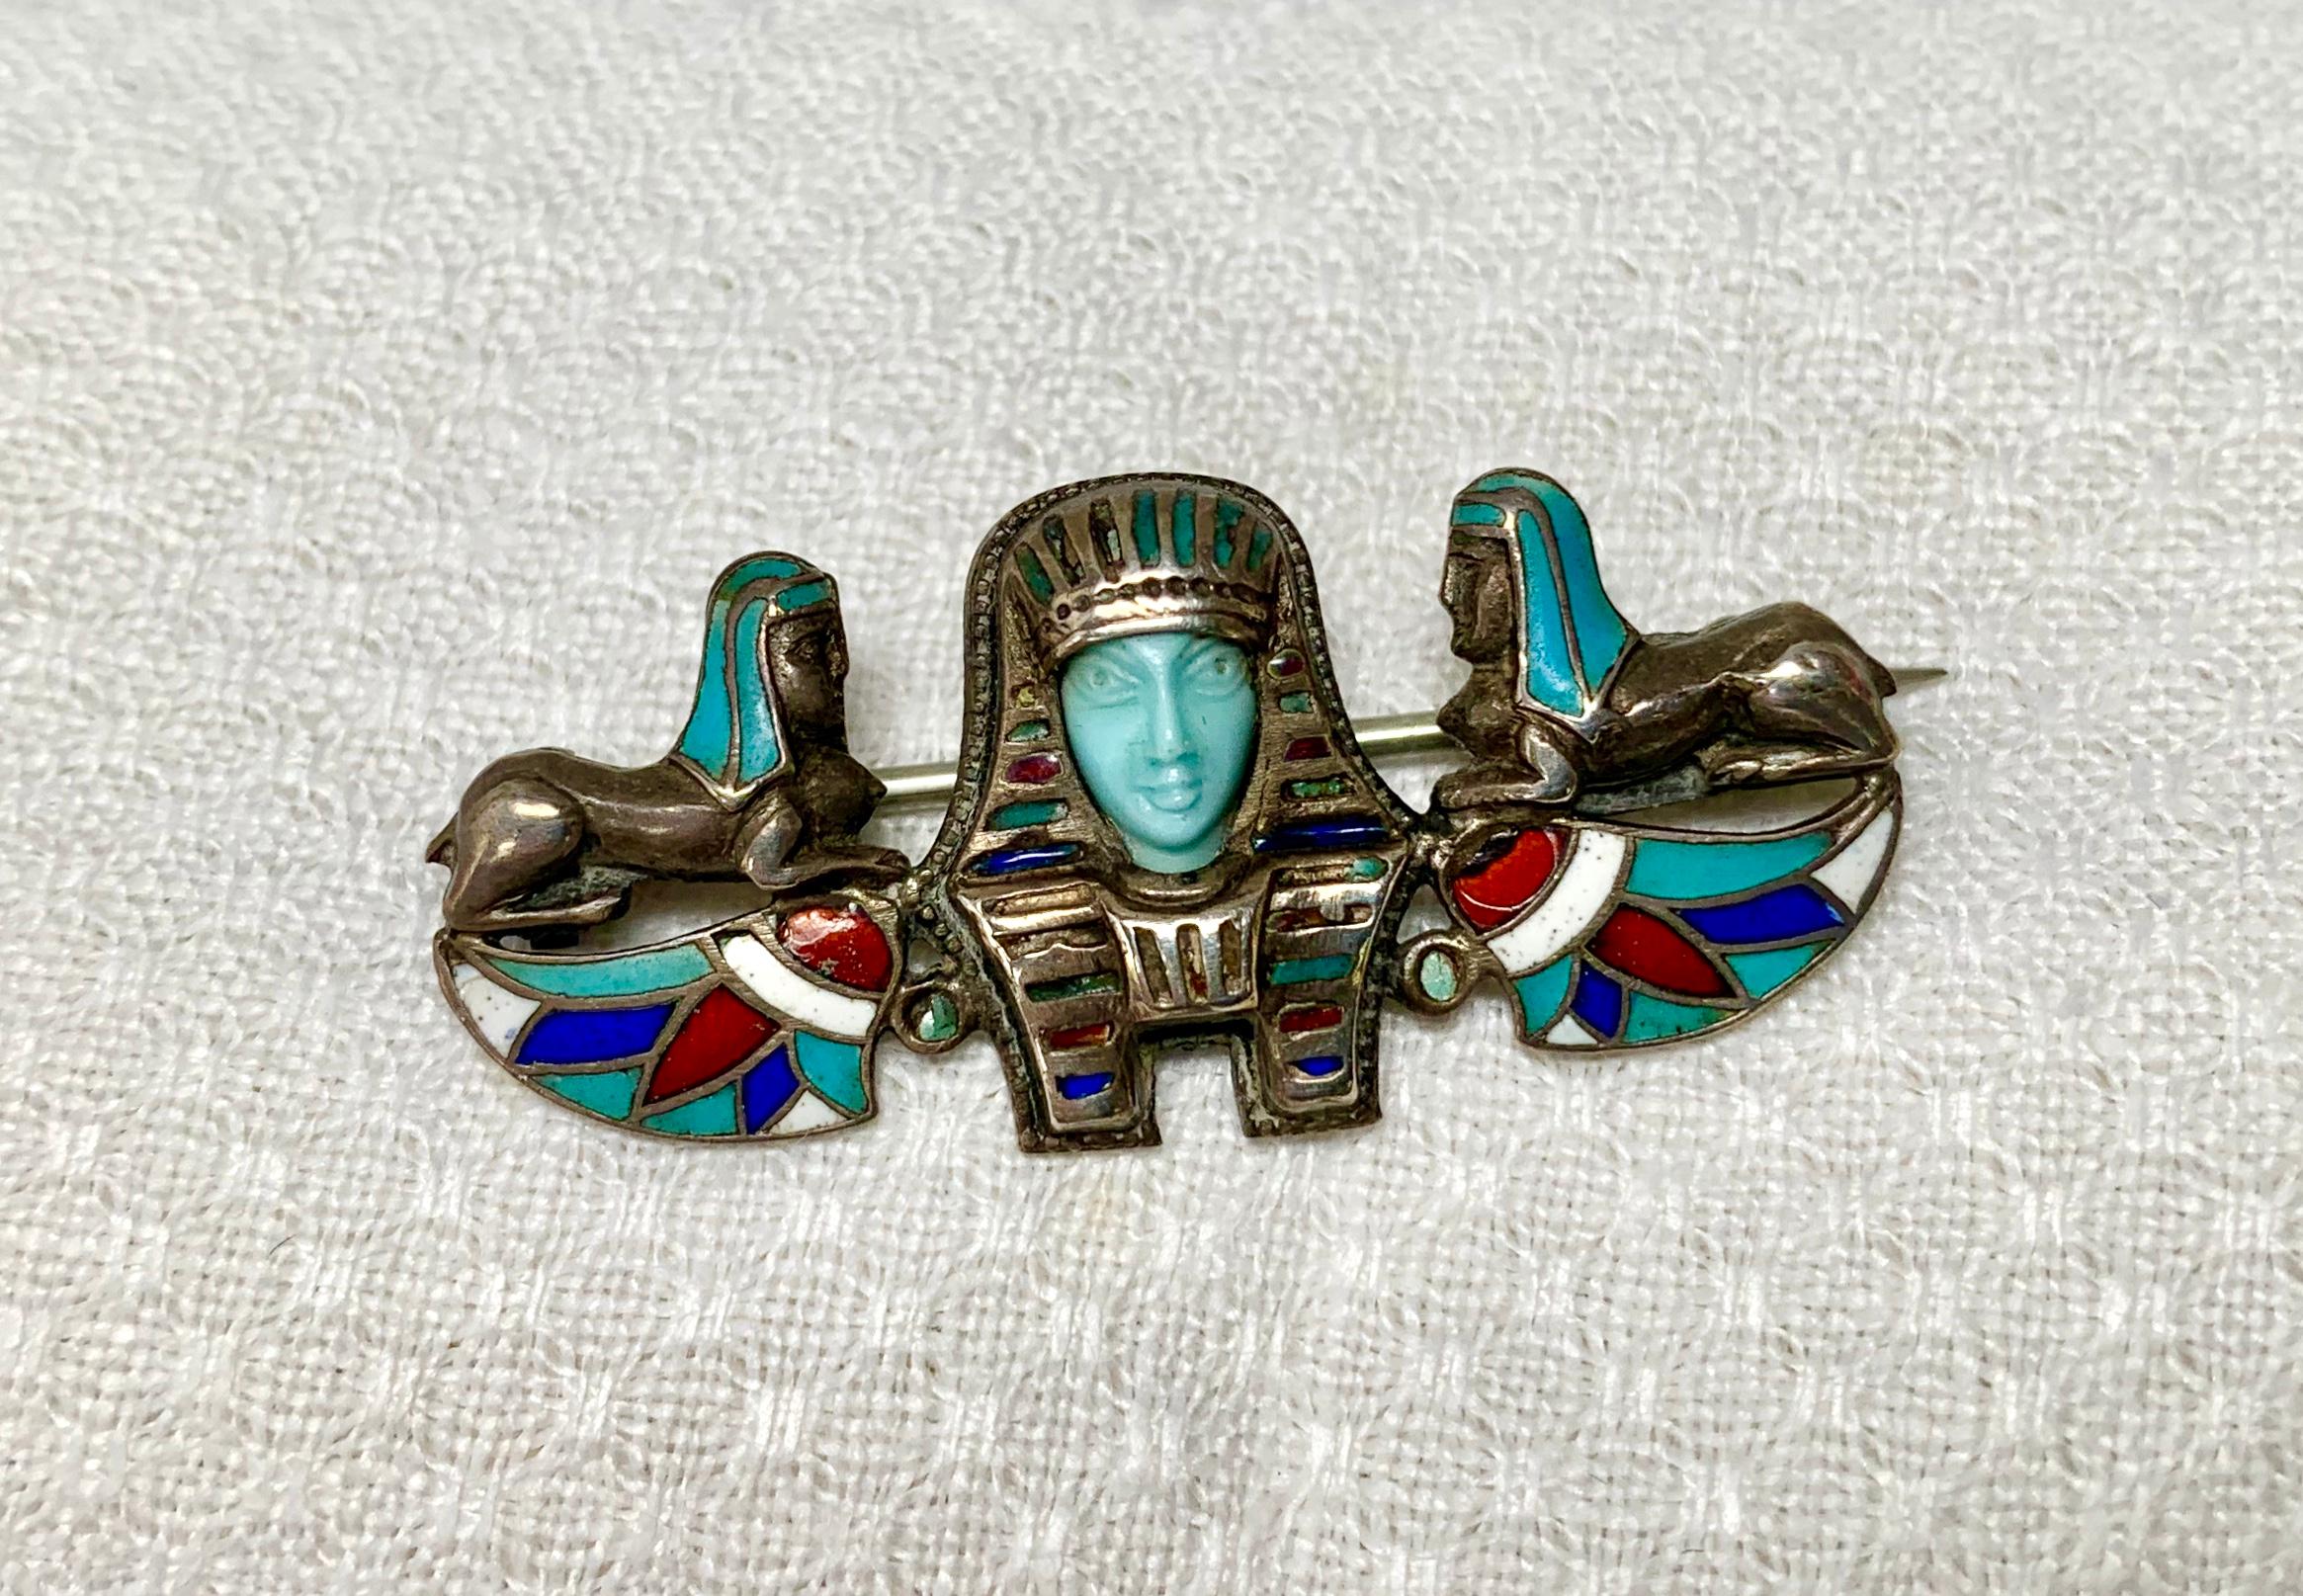 Un rare chef-d'œuvre de l'Art déco néo-égyptien.  Cette superbe broche est centrée sur la tête d'un pharaon dont le visage est magnifiquement sculpté à la main en turquoise persane.  La face turquoise reflète le travail d'un maître artisan.  Le